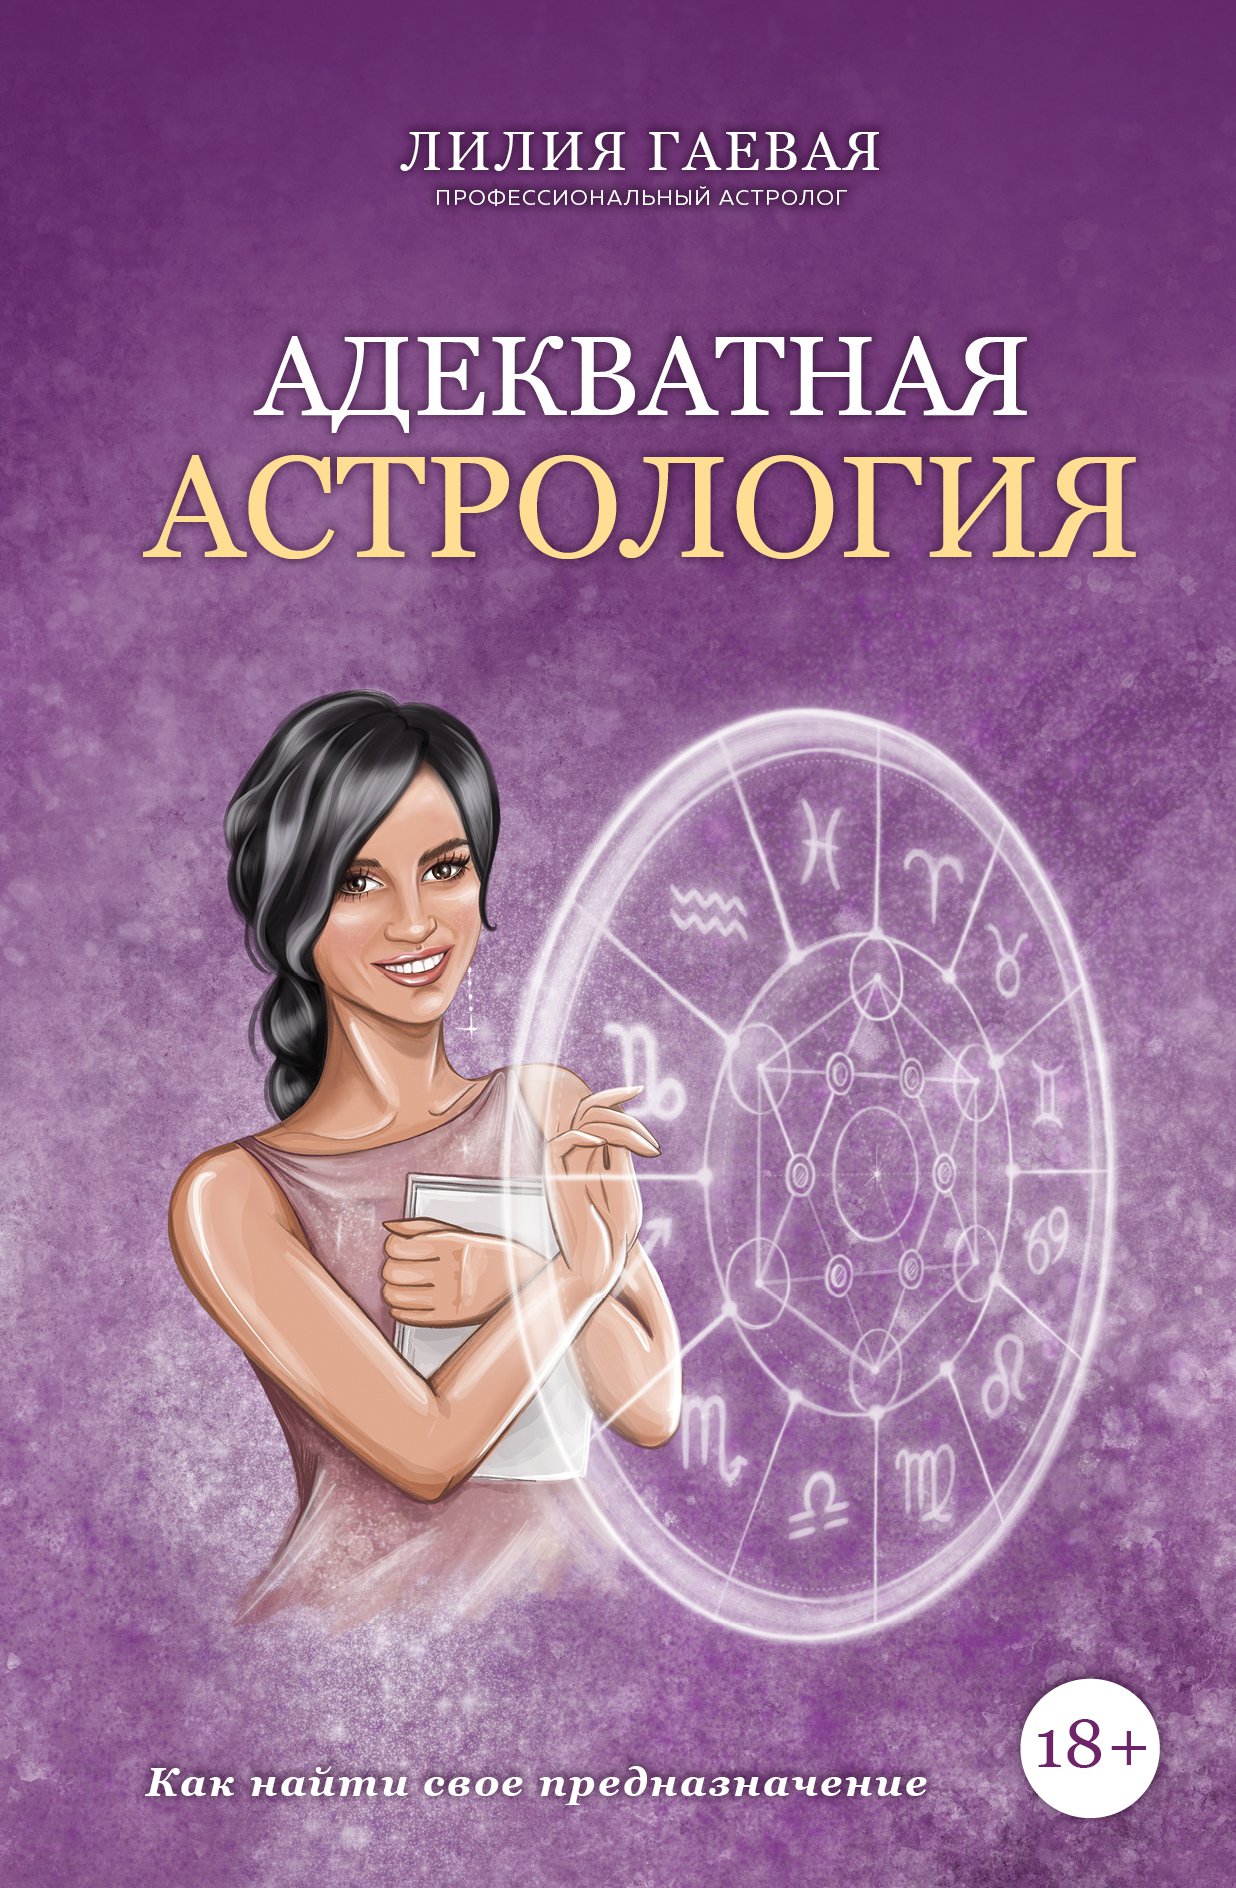 Адекватная астрология (с автографом)